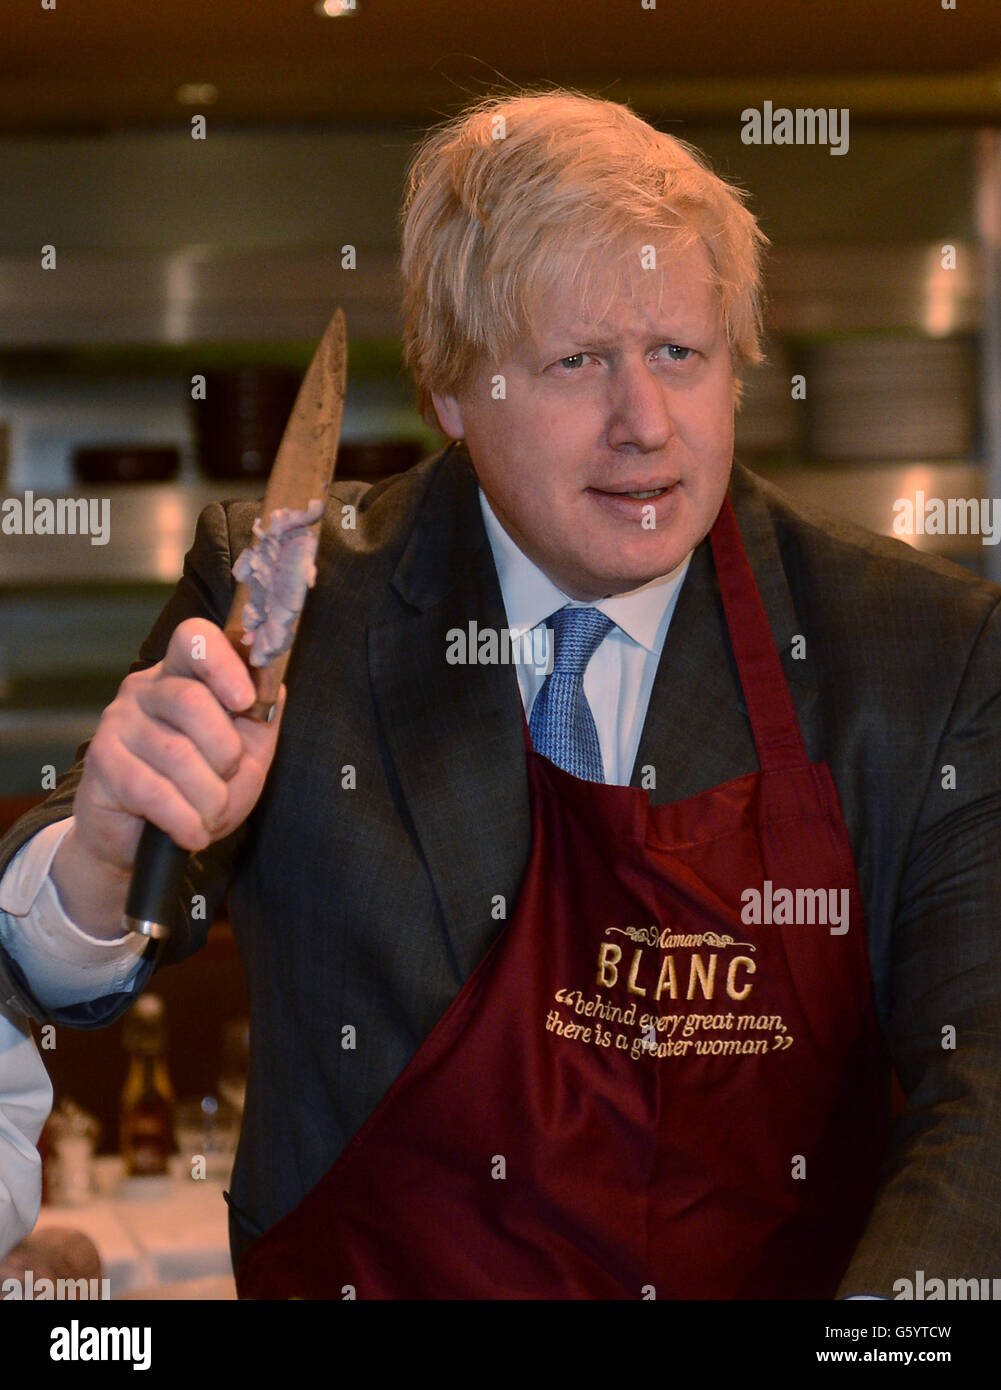 Der Bürgermeister von London, Boris Johnson, trifft Arbeiter in einem der Brasserie Blanc-Restaurants von Raymond Blanc in der Londoner City, wo er die Gastronomiebetriebe der Hauptstadt dazu aufforderte, mehr junge Menschen als Auszubildende zu übernehmen. Stockfoto